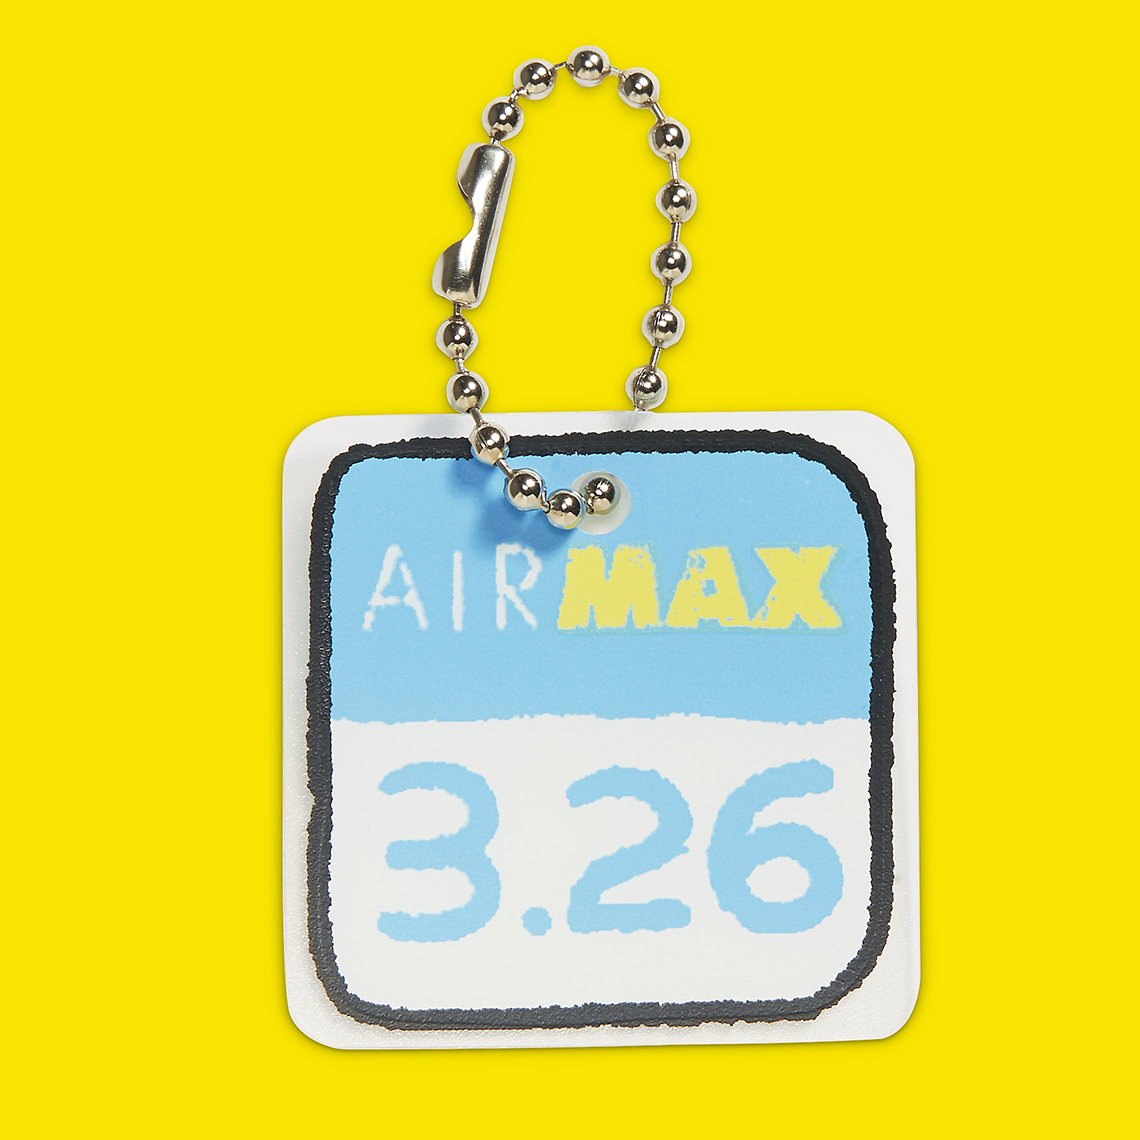 Nike Air Max Scorpion Air Max Day Fj6032 910 7